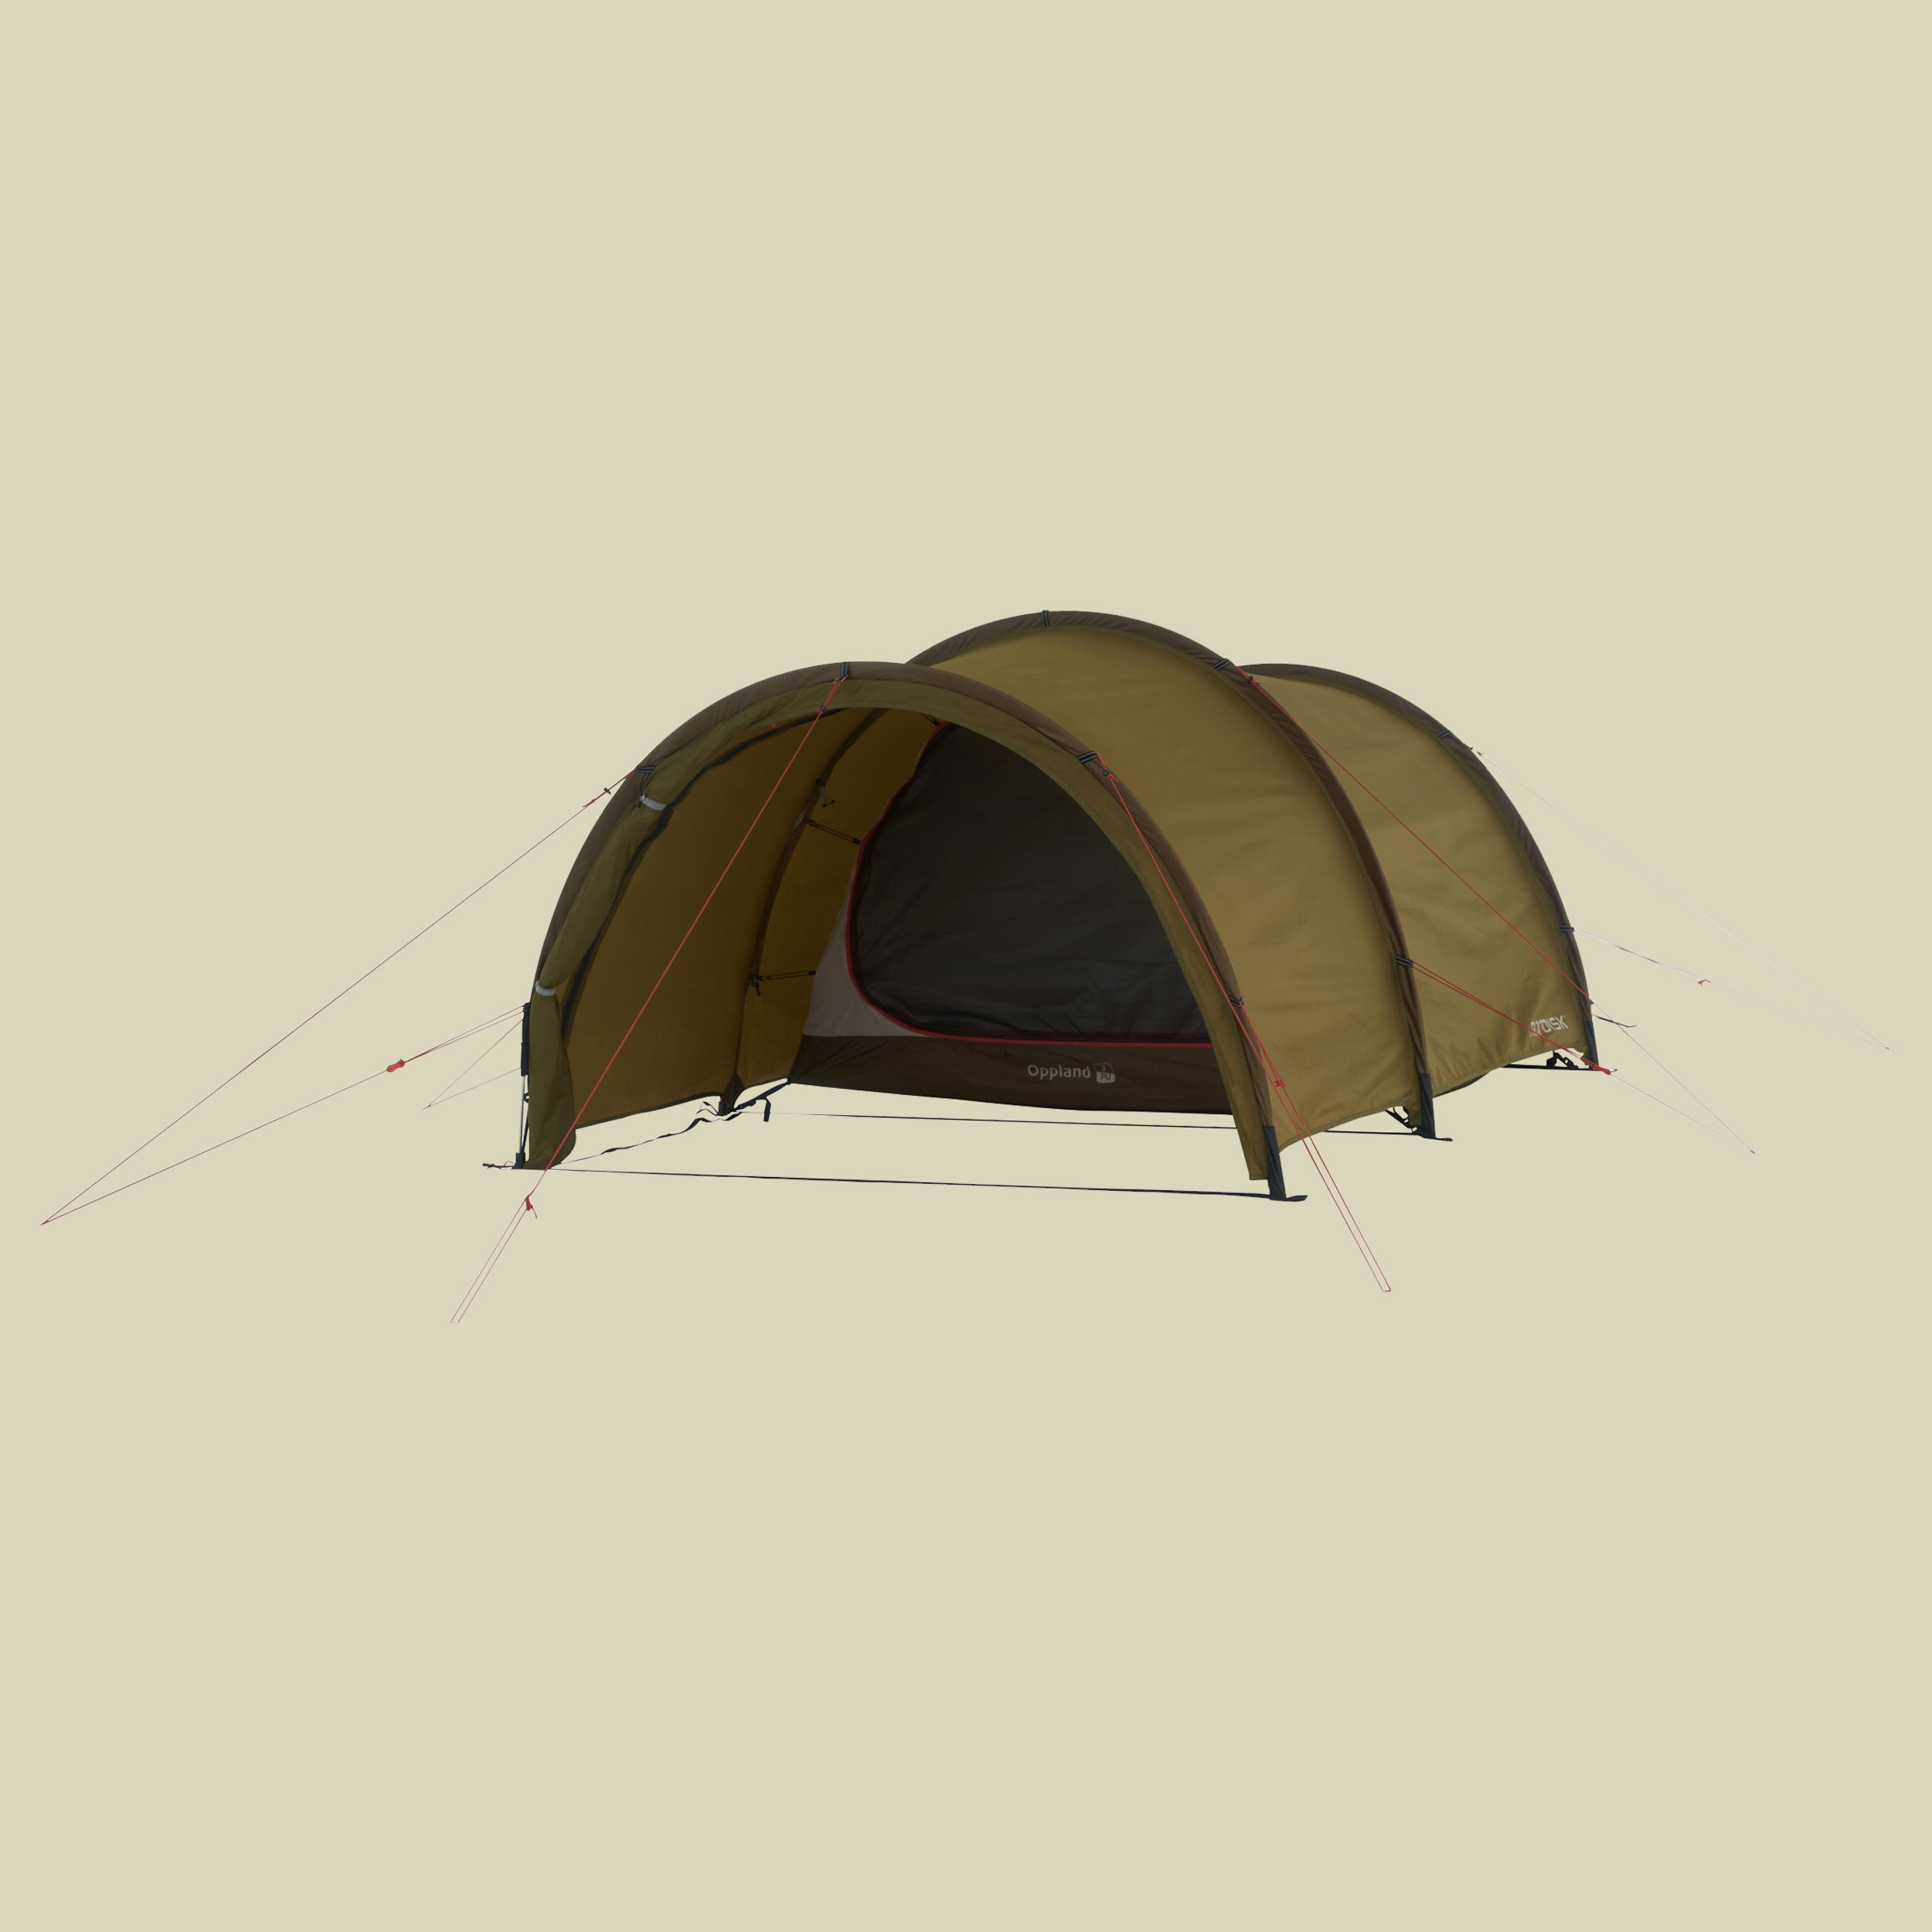 Oppland 2 (2.0) PU Tent  2-Personen Zelt Farbe dark olive